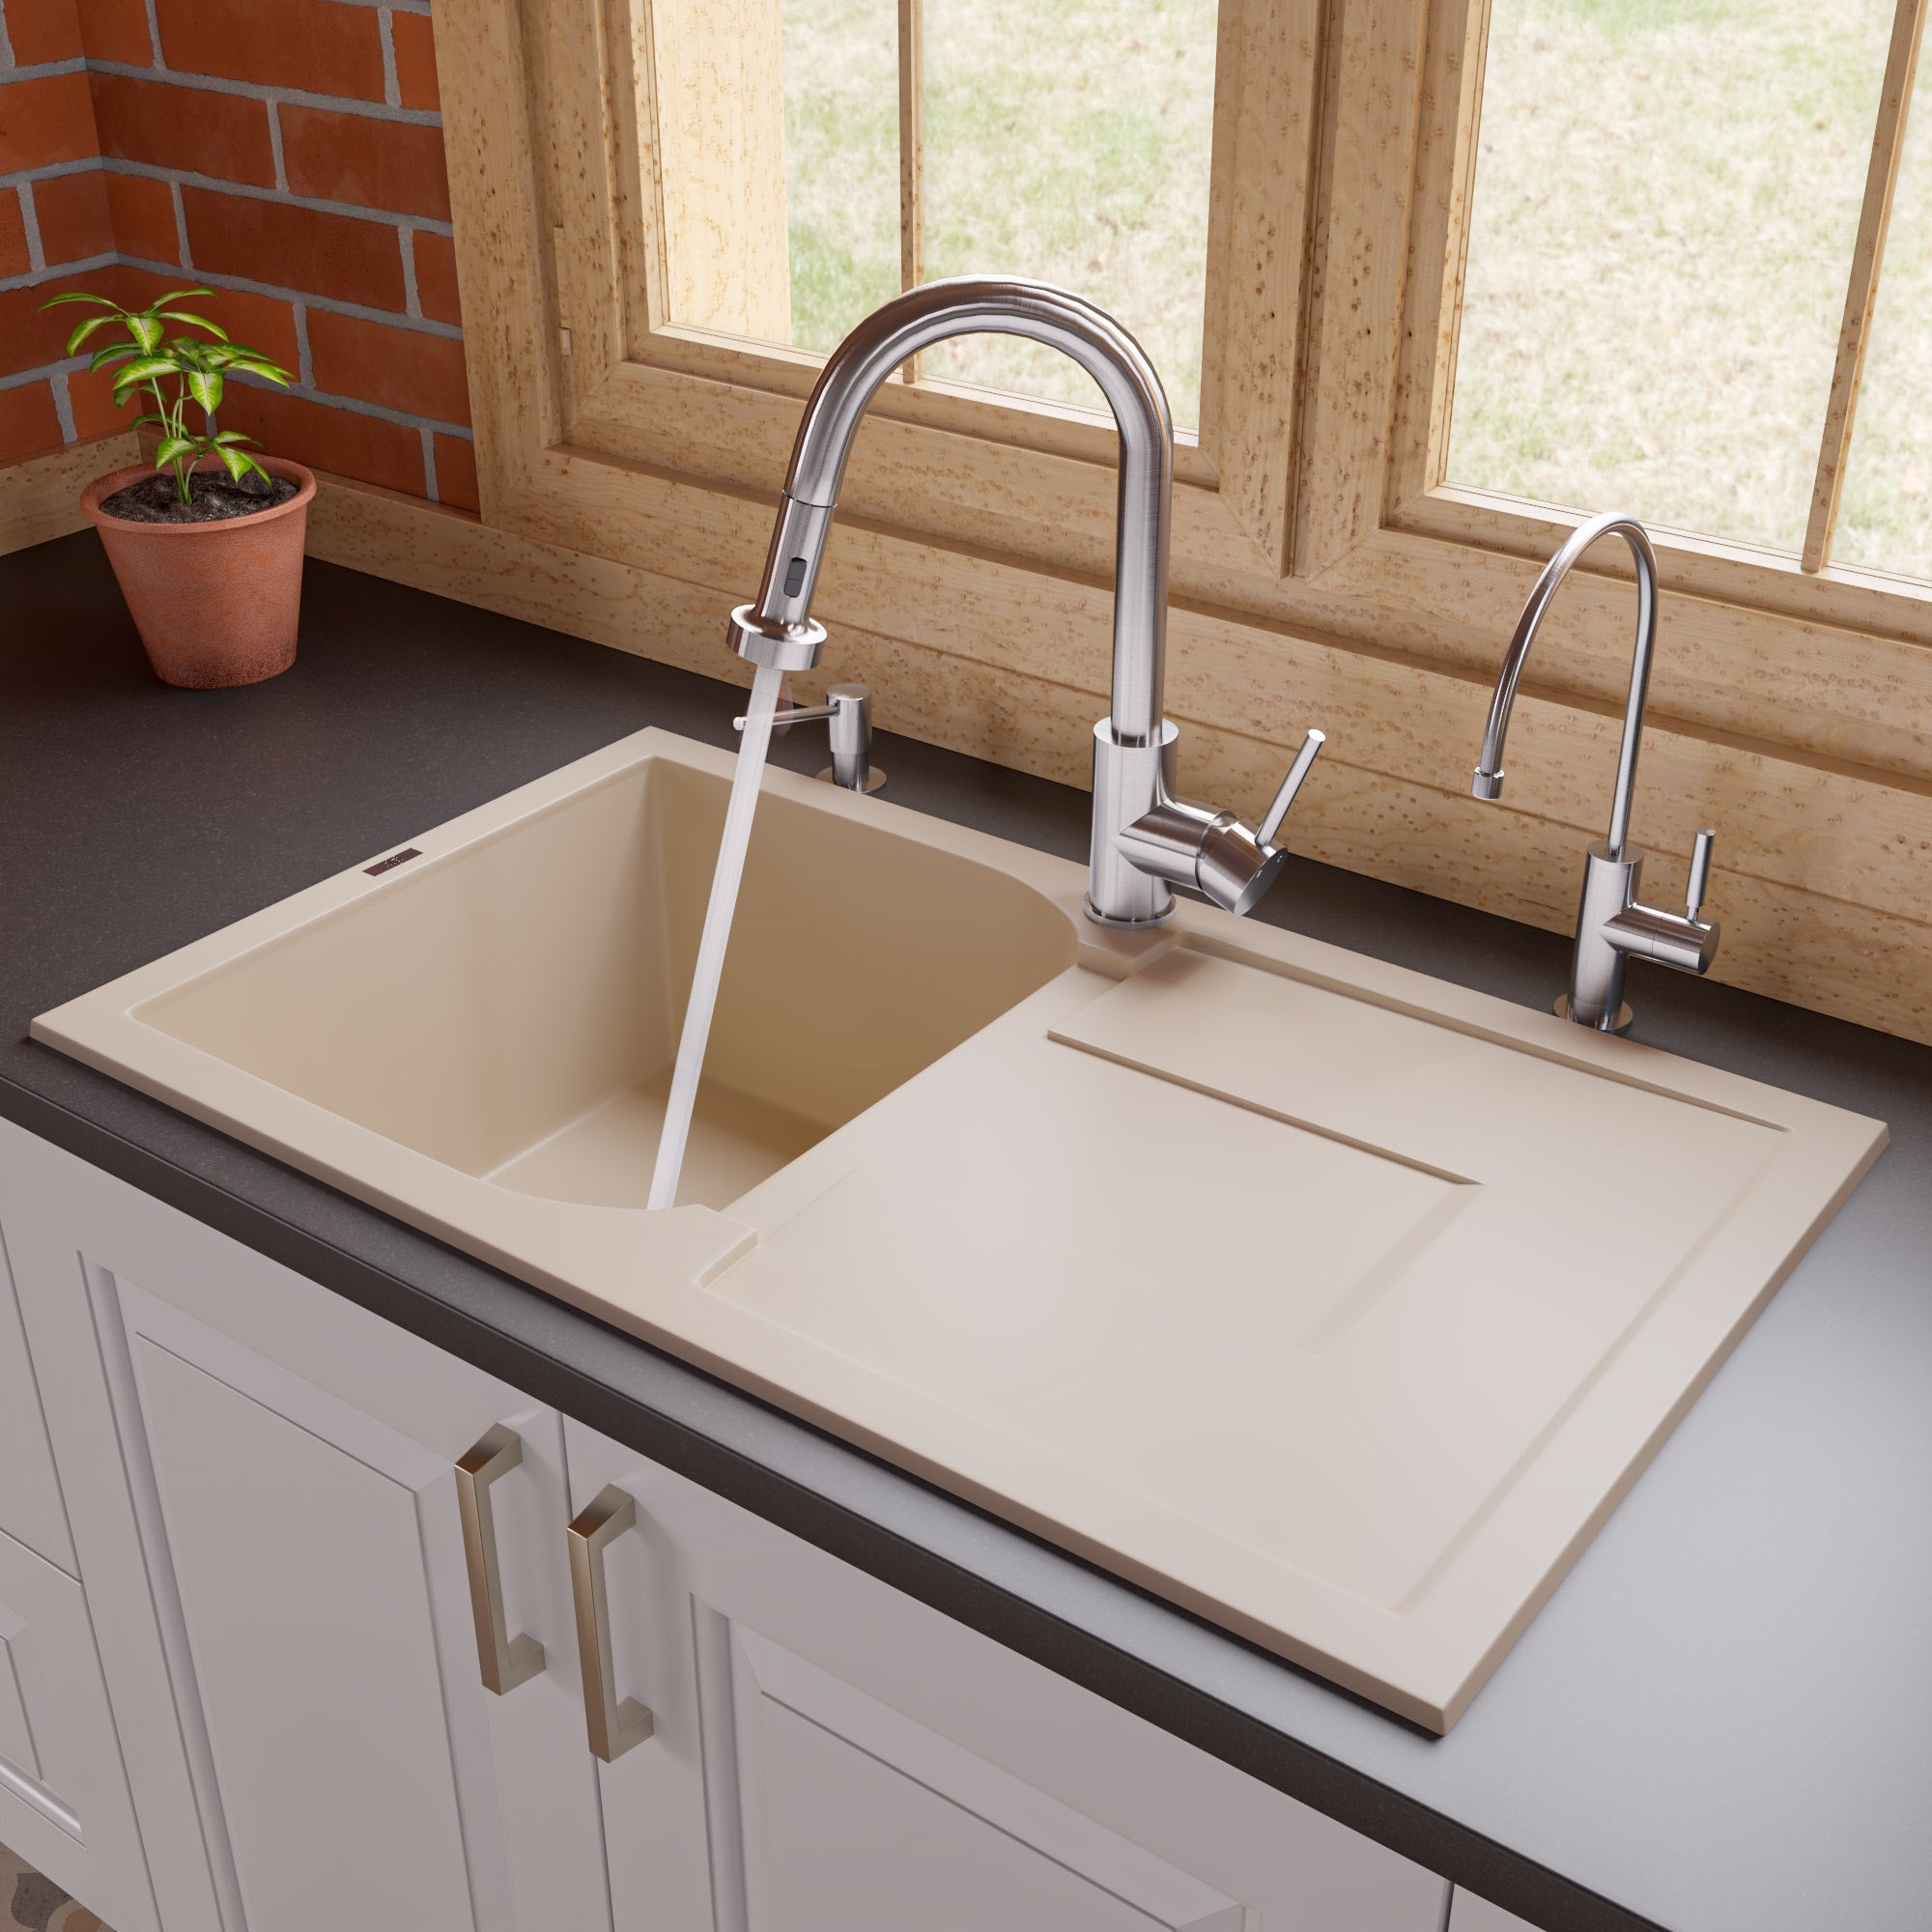 BOCCHI Levanzo 20 Dual-Mount Single Bowl Granite Composite Kitchen Sink with Drain Board, Matte Black